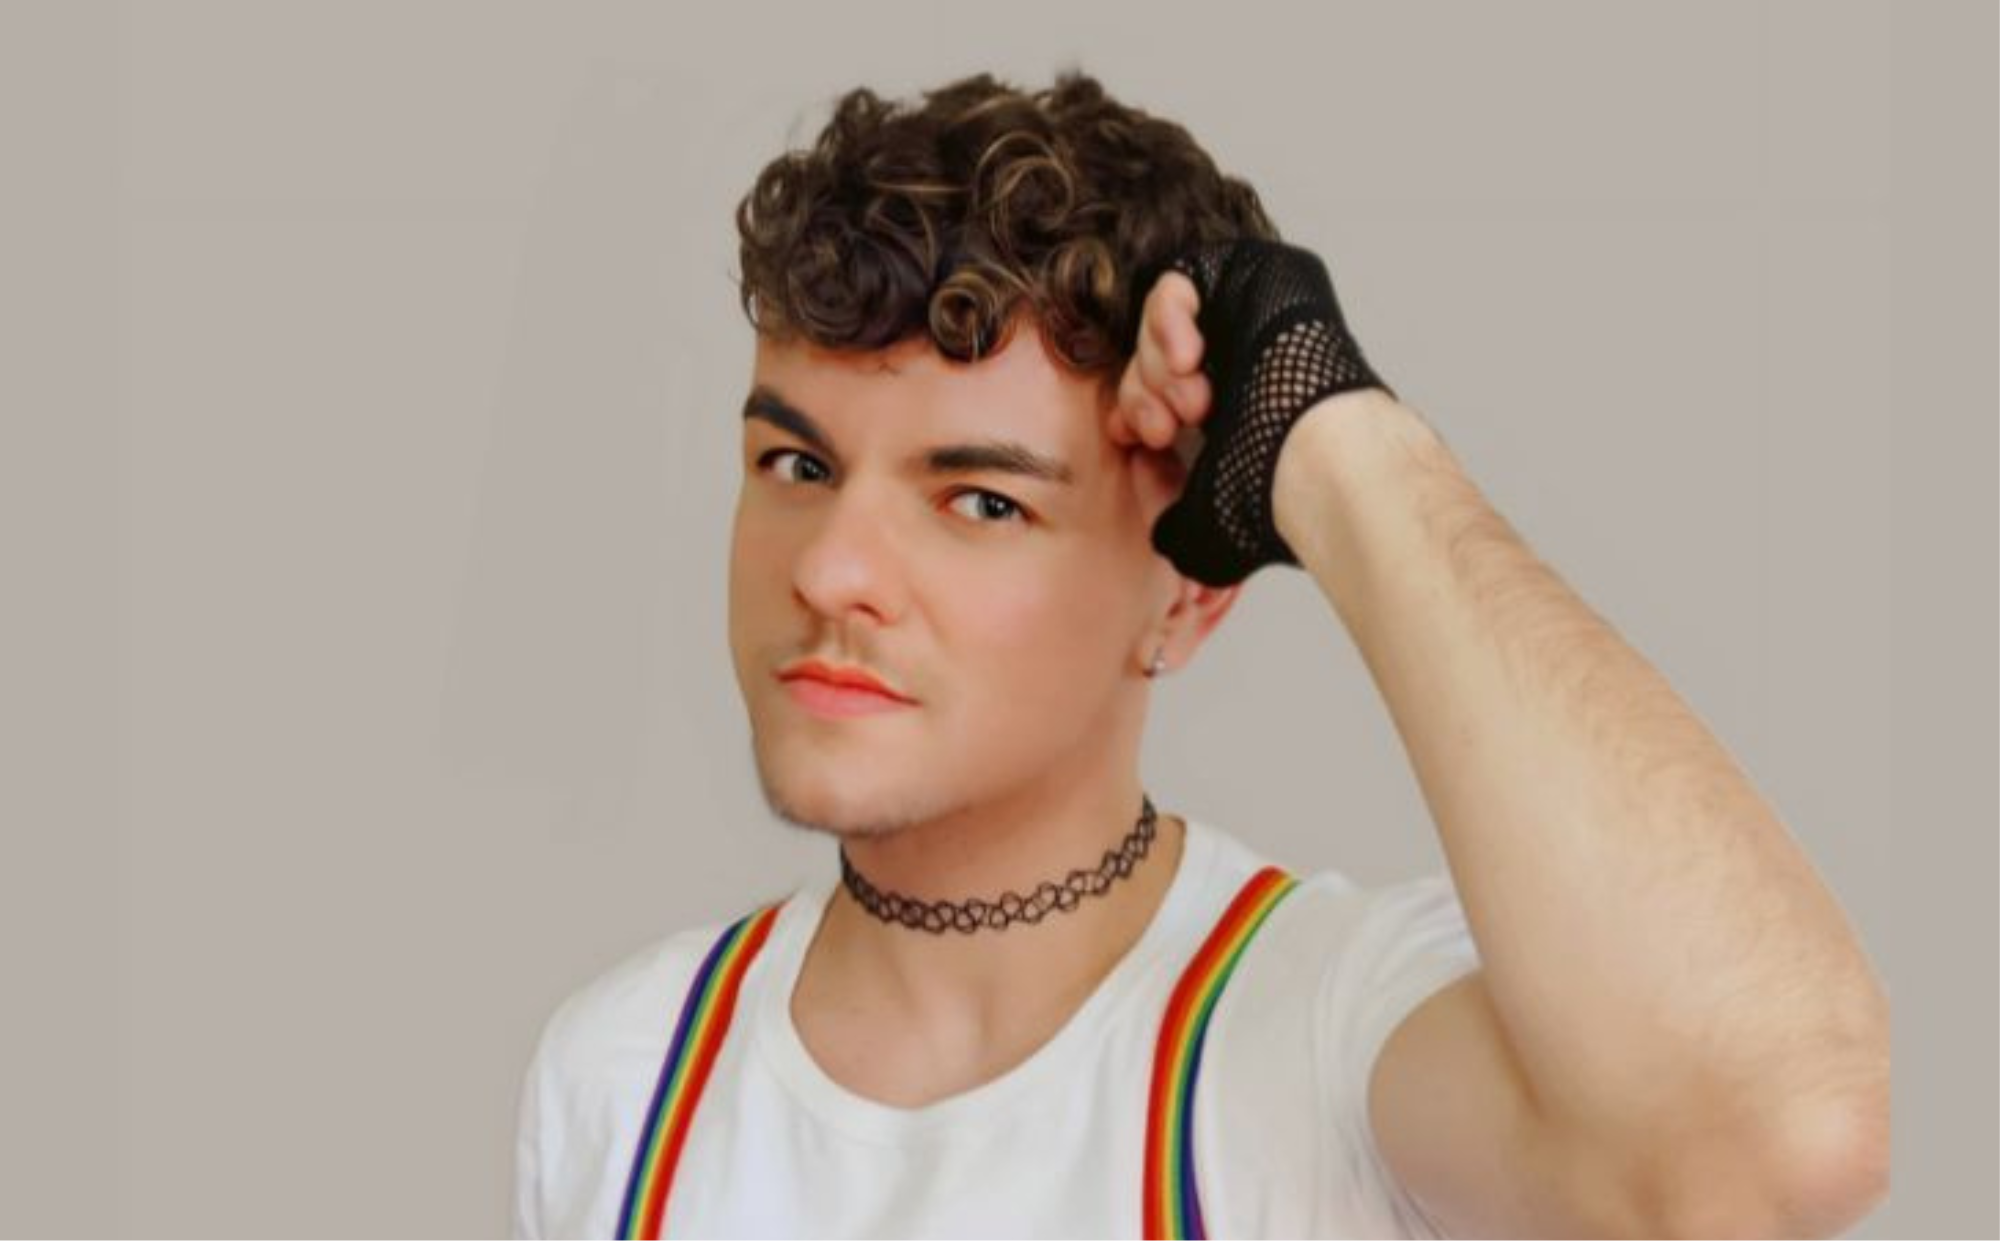 Felipe D’Orazio cantor e compositor LGBTI+ realizará apresentação em São Paulo neste sábado 24 de junho